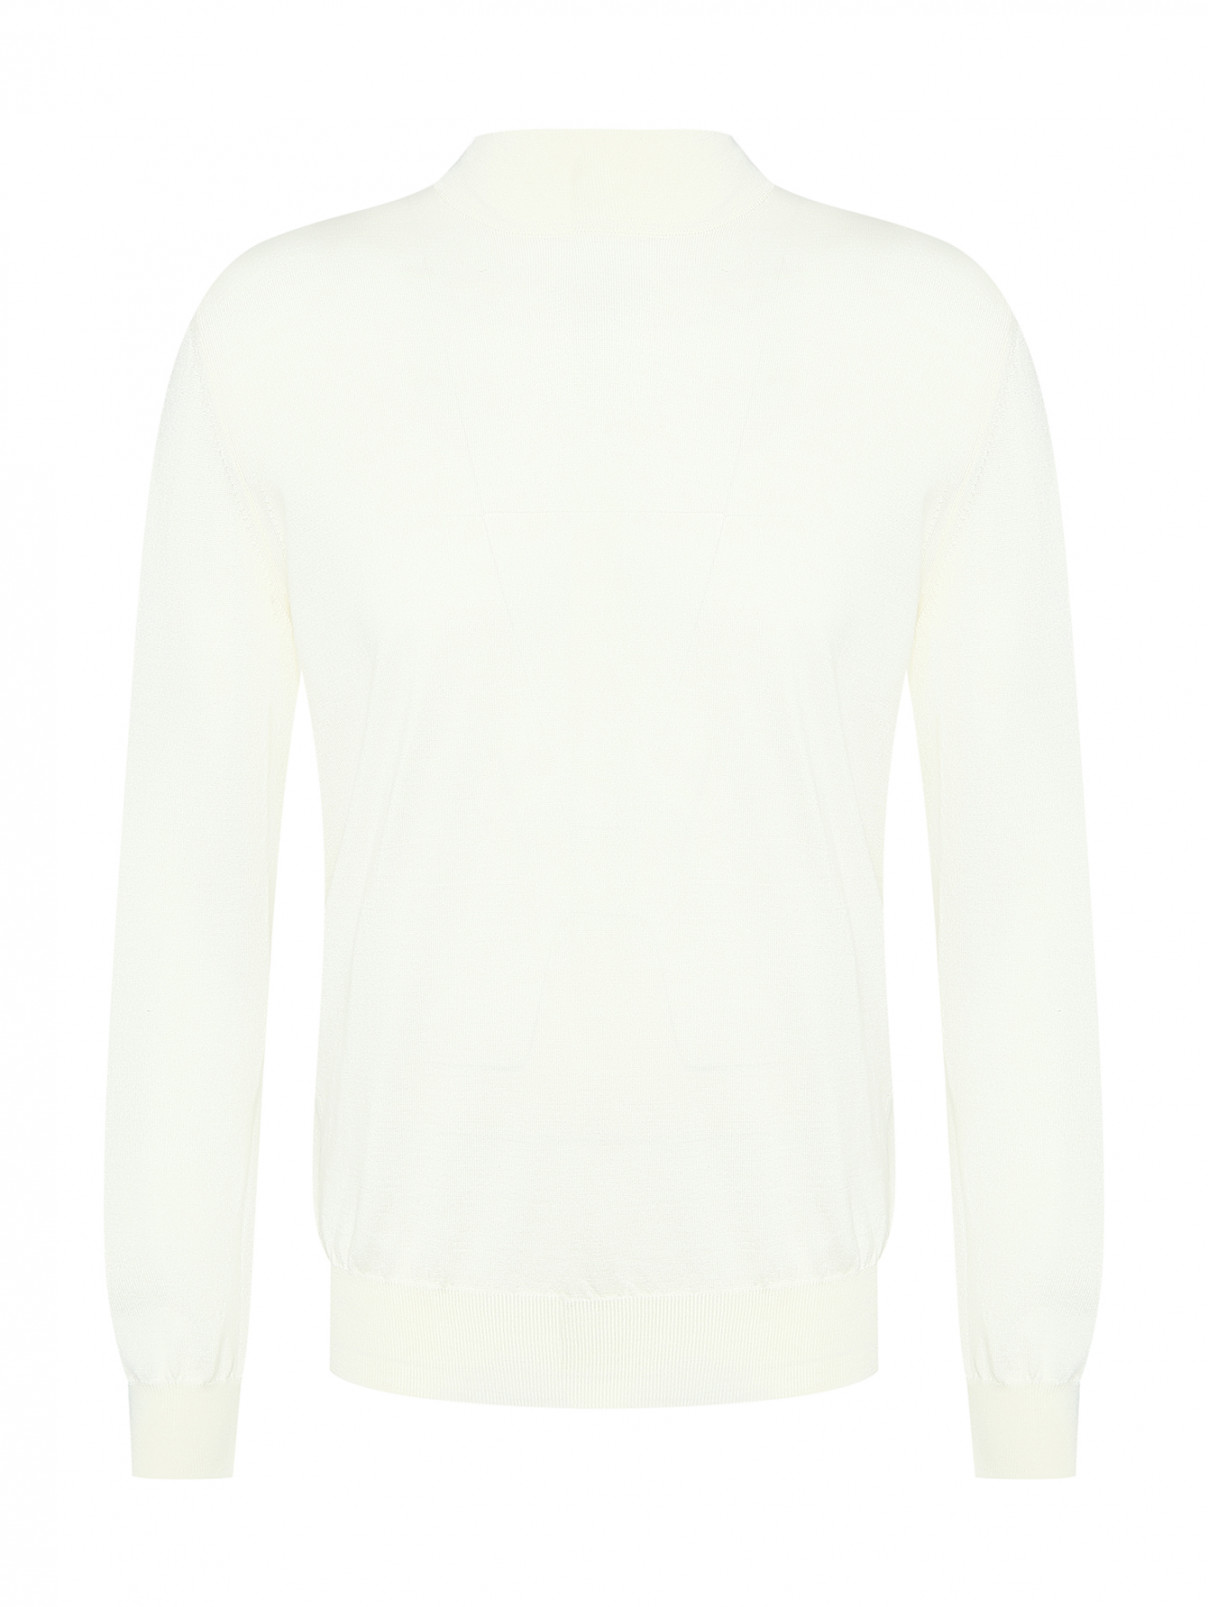 Джемпер из шерсти и шелка с длинными рукавами Bertolo  –  Общий вид  – Цвет:  Белый